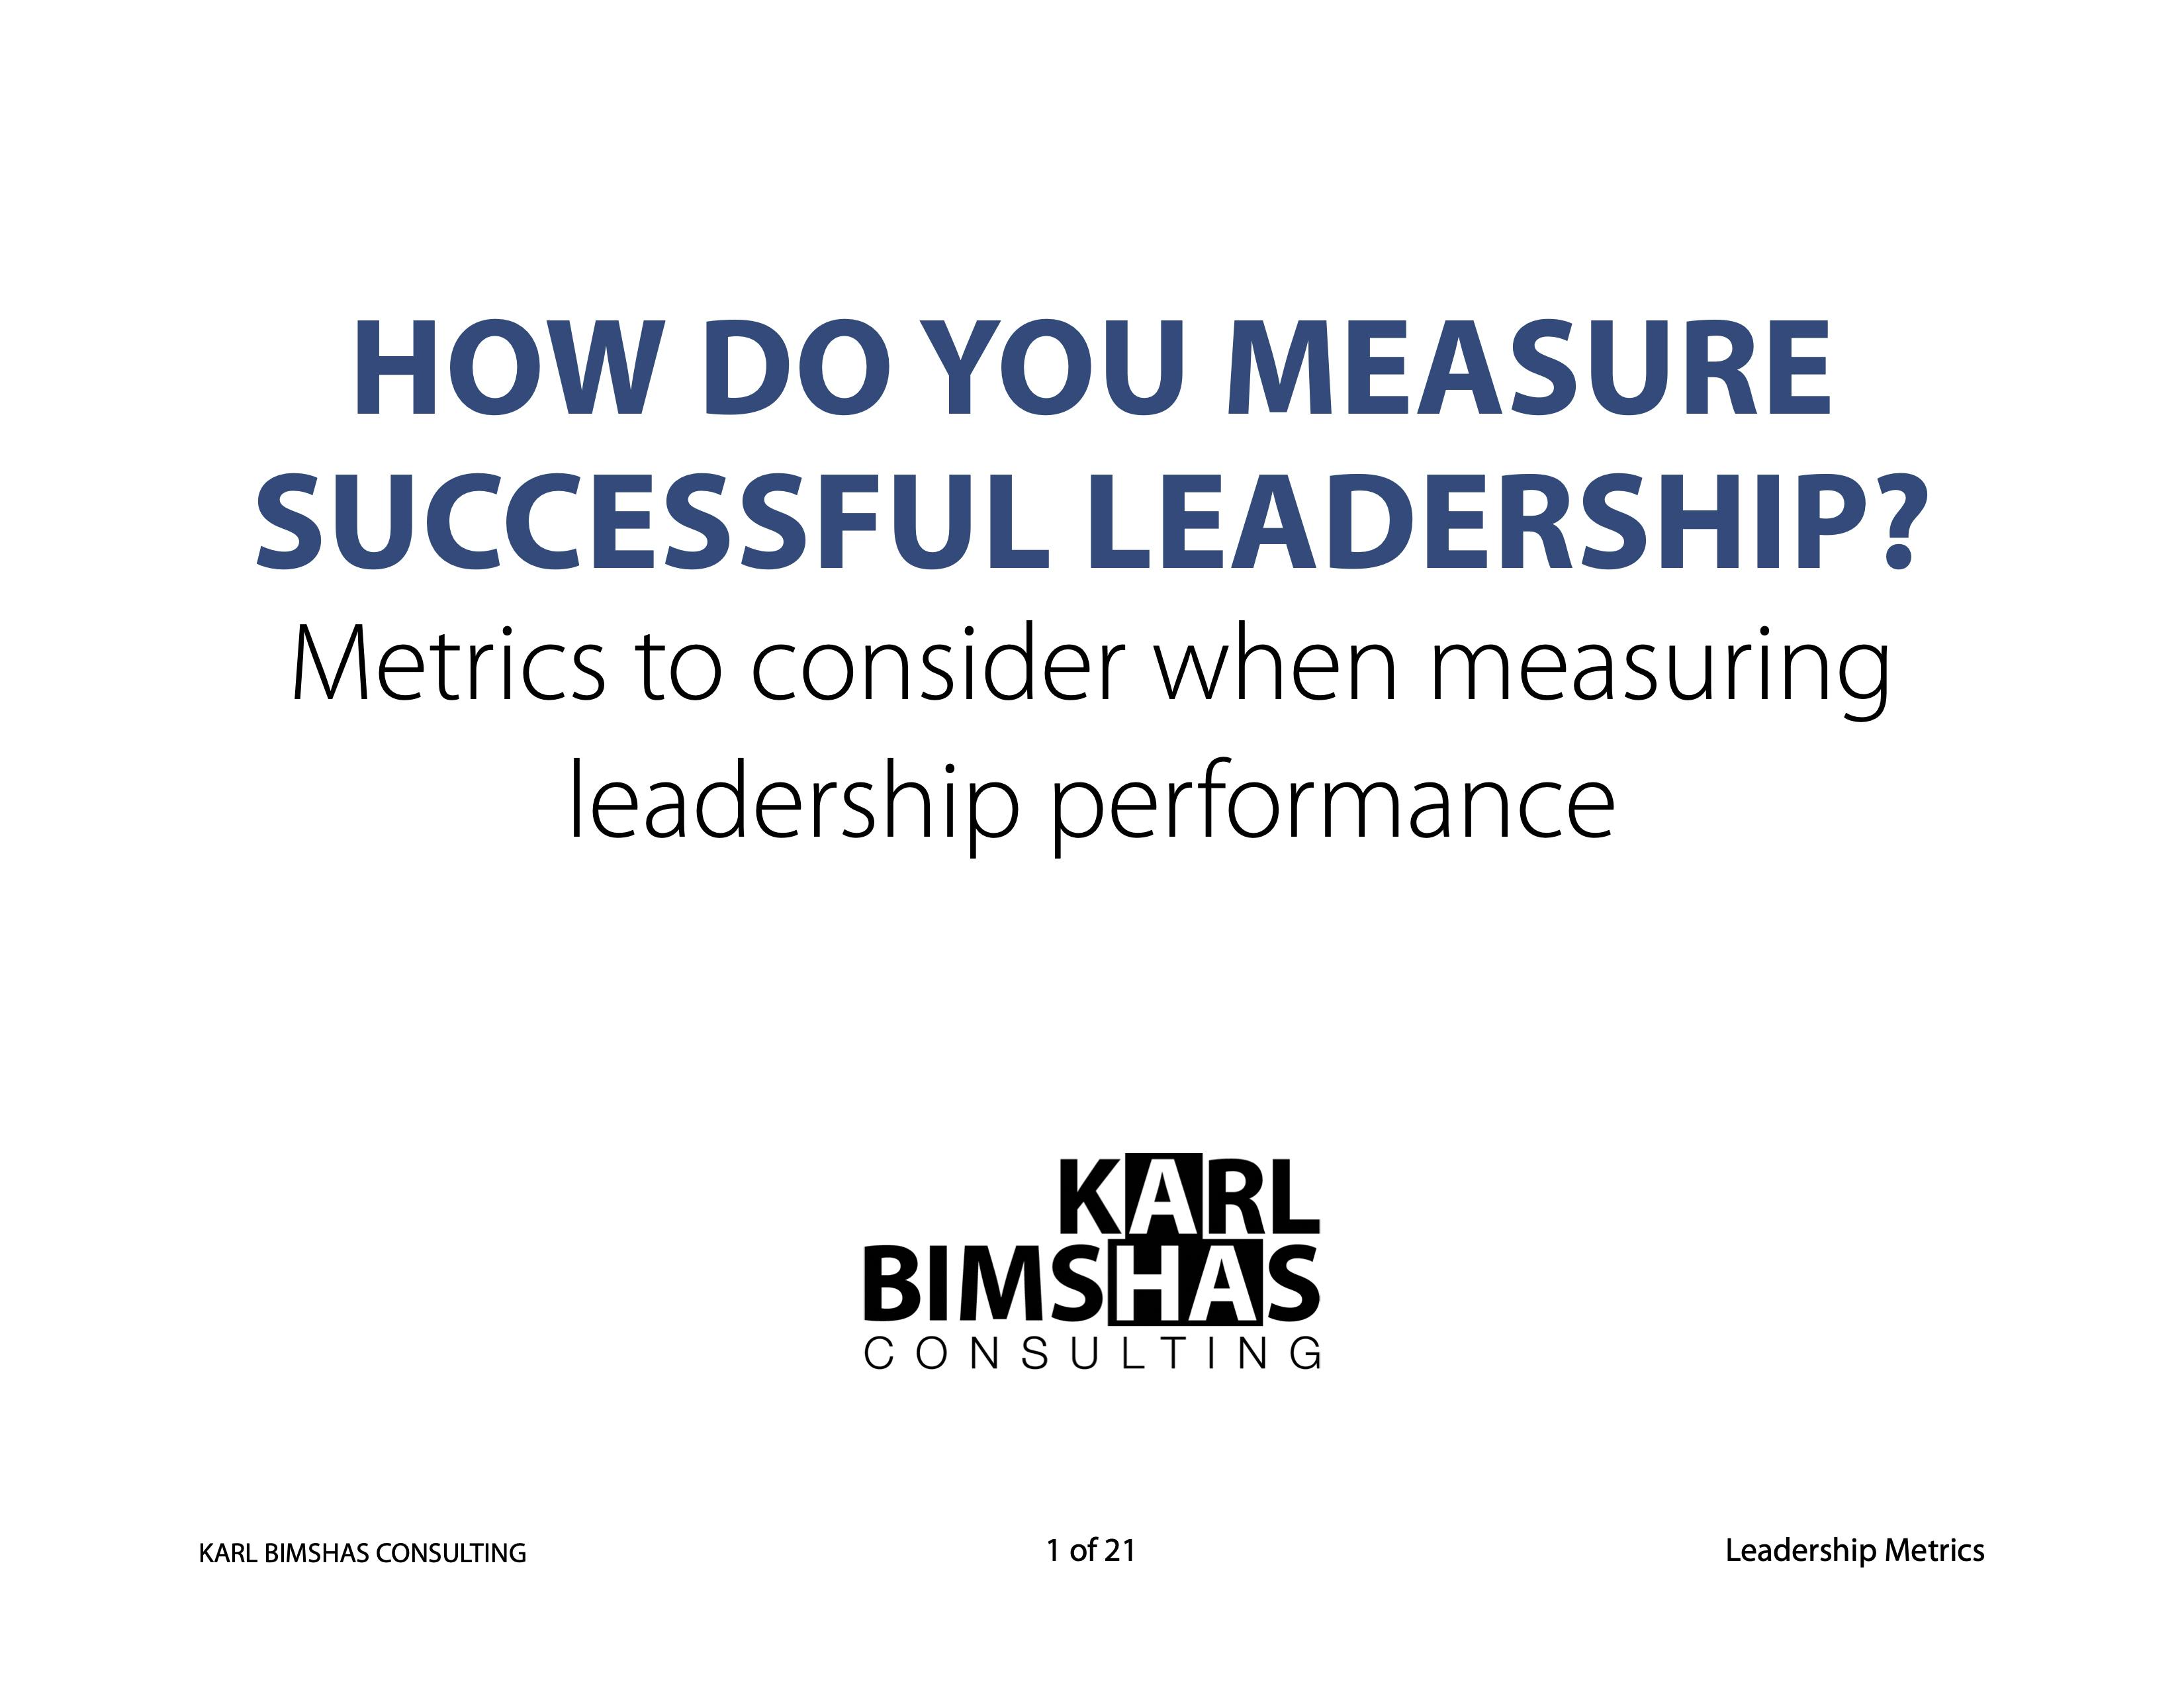 Leadership Metrics